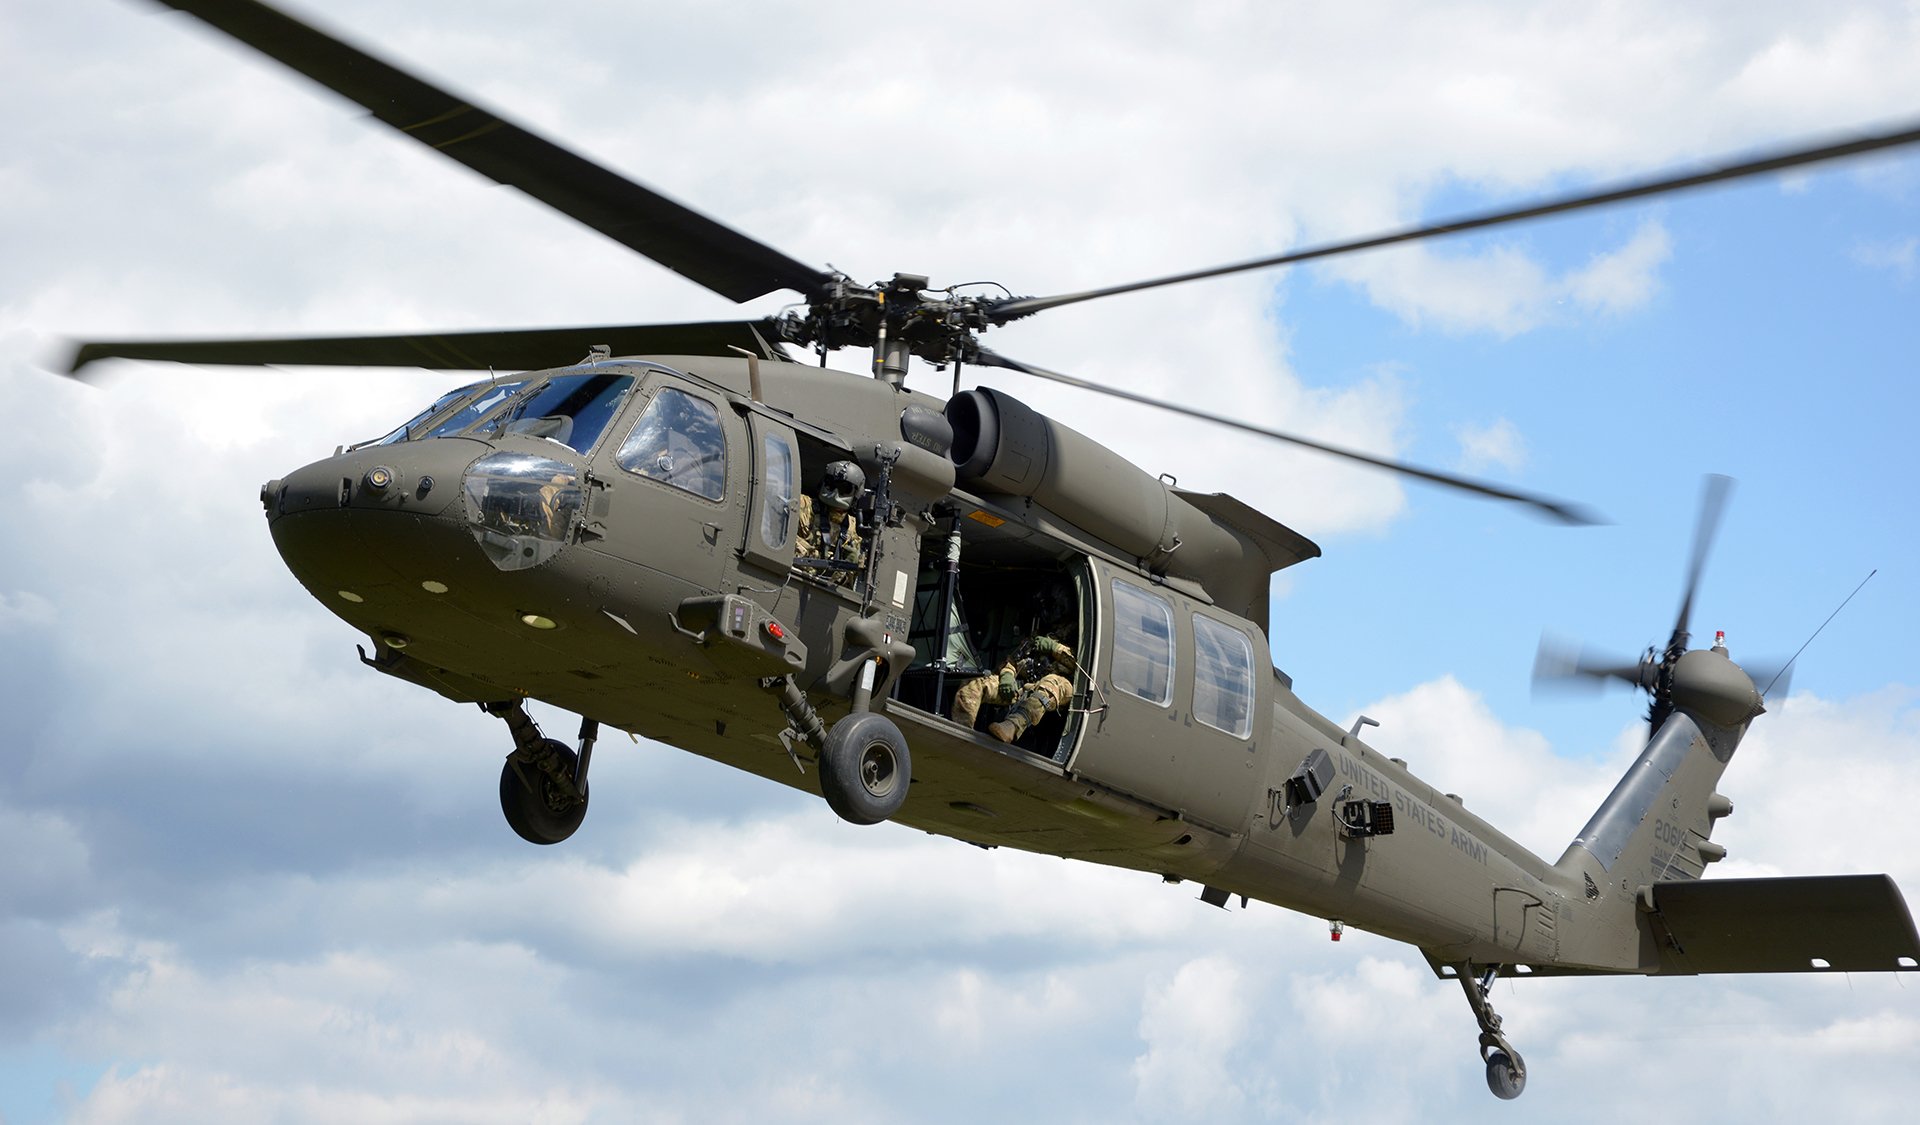  Al şaselea elicopter Black Hawk destinat intervenţiilor în situaţii de urgenţă a ajuns în România